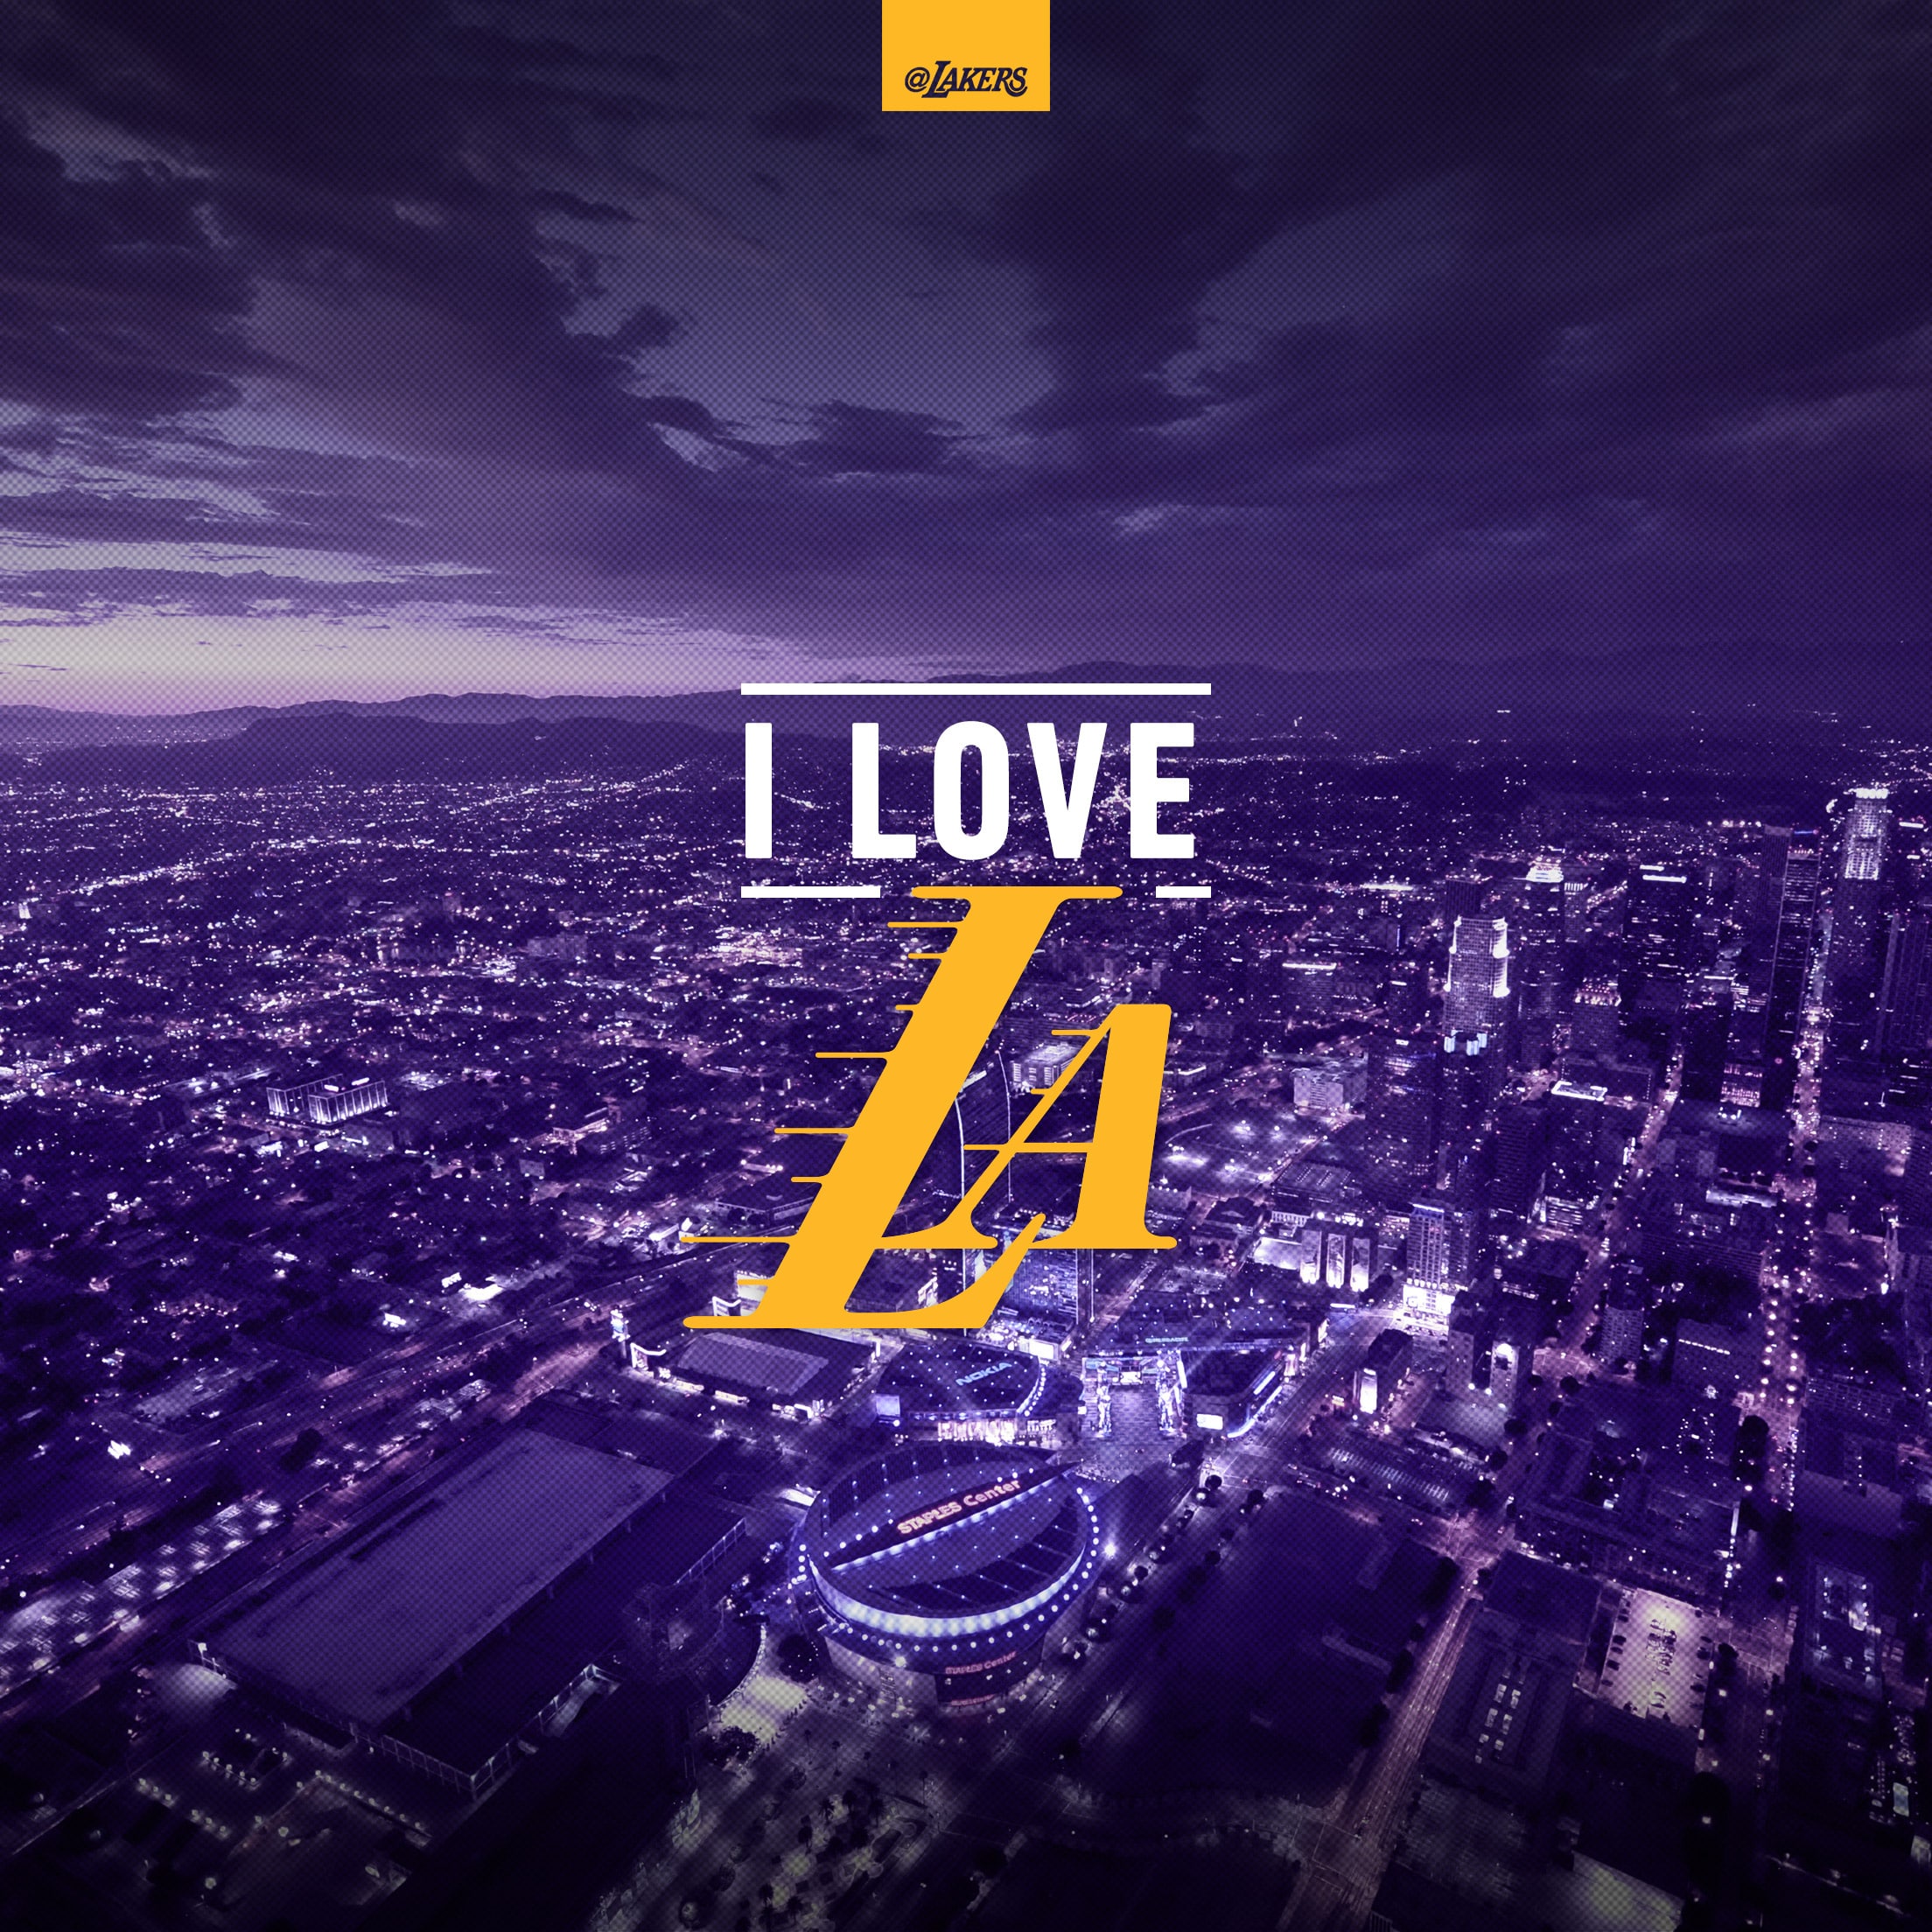 [56+] Lakers 2020 Wallpapers on WallpaperSafari